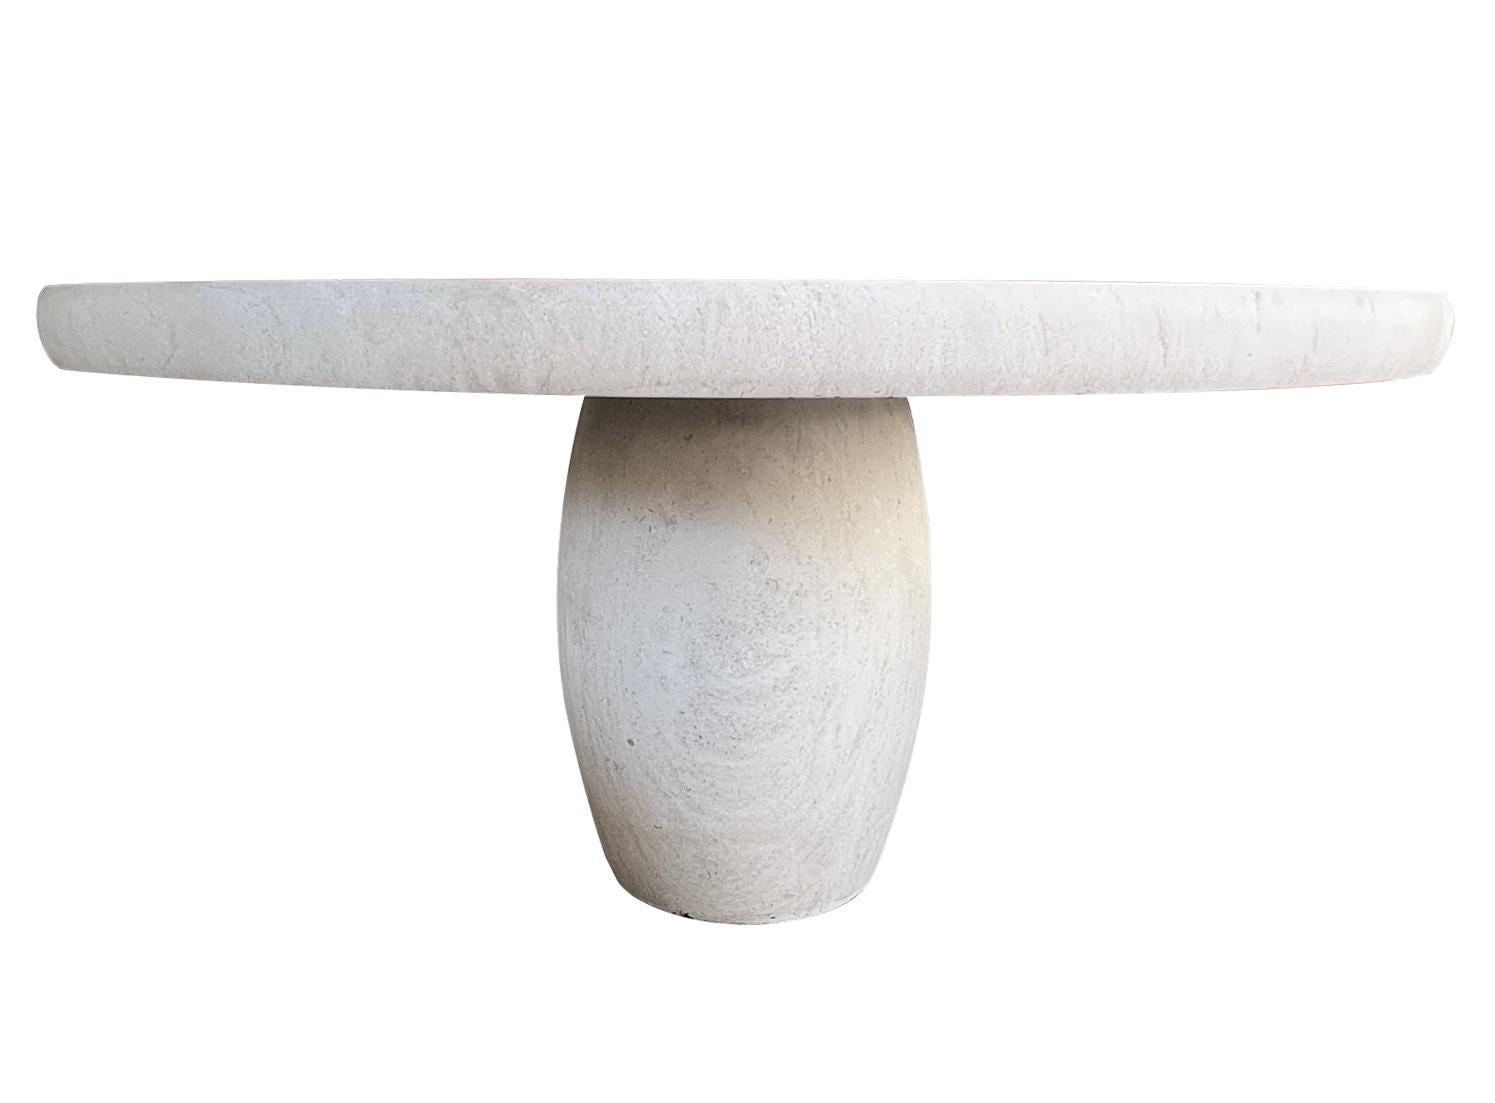 Der in Frankreich aus französischem Kalkstein gefertigte Tisch besteht aus einer dicken, runden Platte mit stumpfer Kante und einem tonnenförmigen Gestell. Neu mit nur minimalen Abnutzungserscheinungen; der Tisch eignet sich ideal für